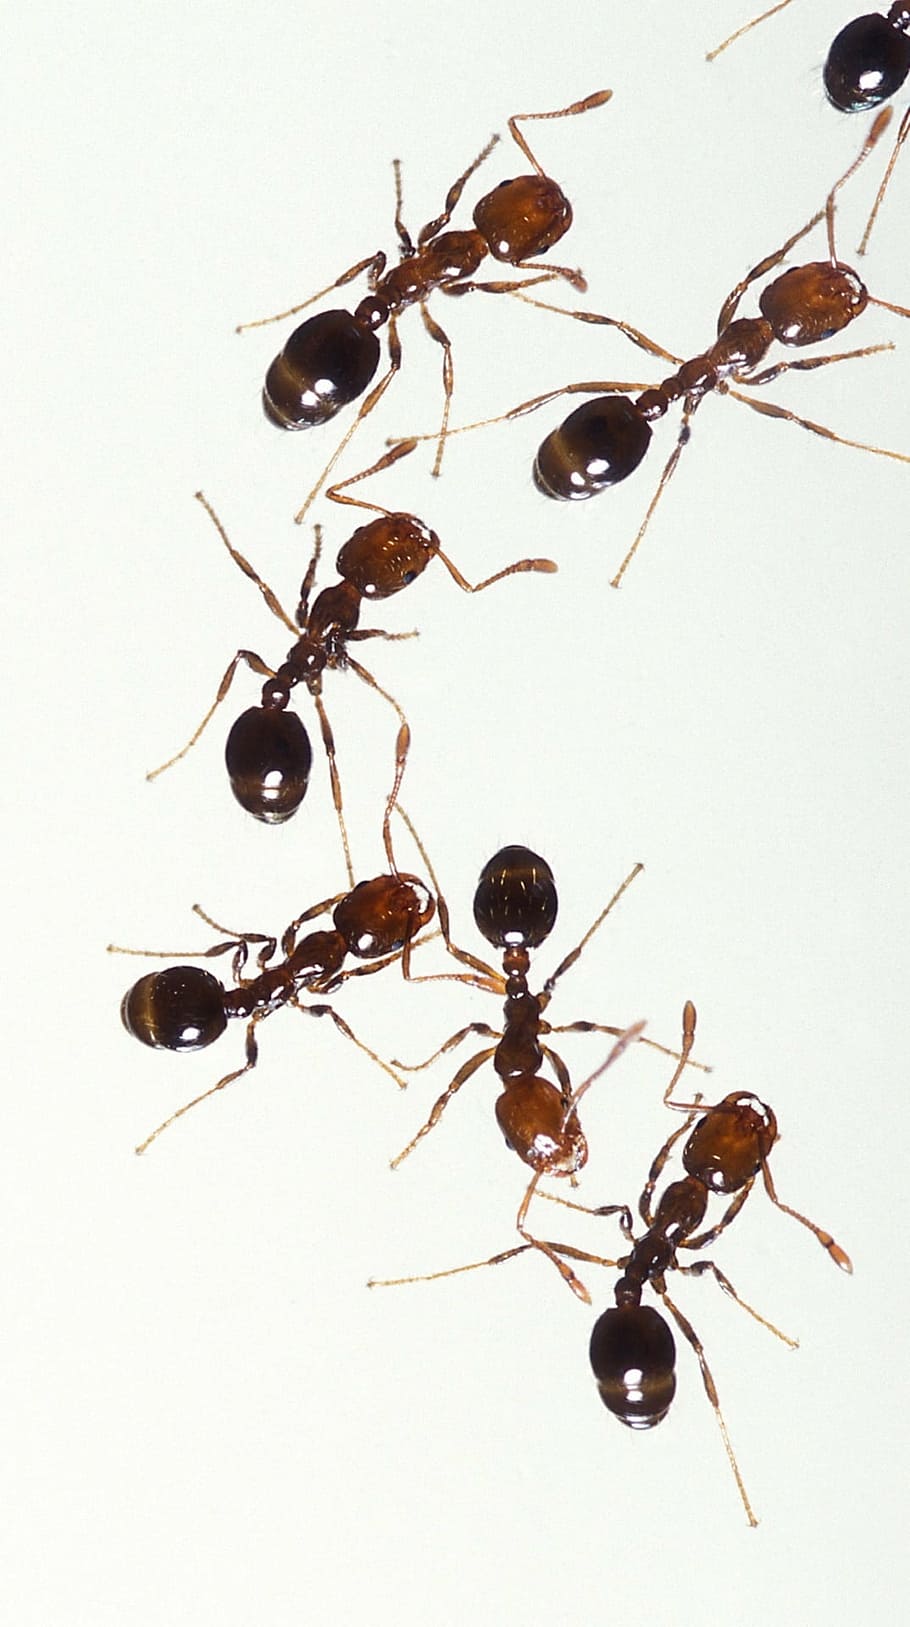 茶色の蟻のロット, 火の蟻, 昆虫, 労働者, 害虫, マクロ, スティング, 痛みを伴う, チームワーク, グループ